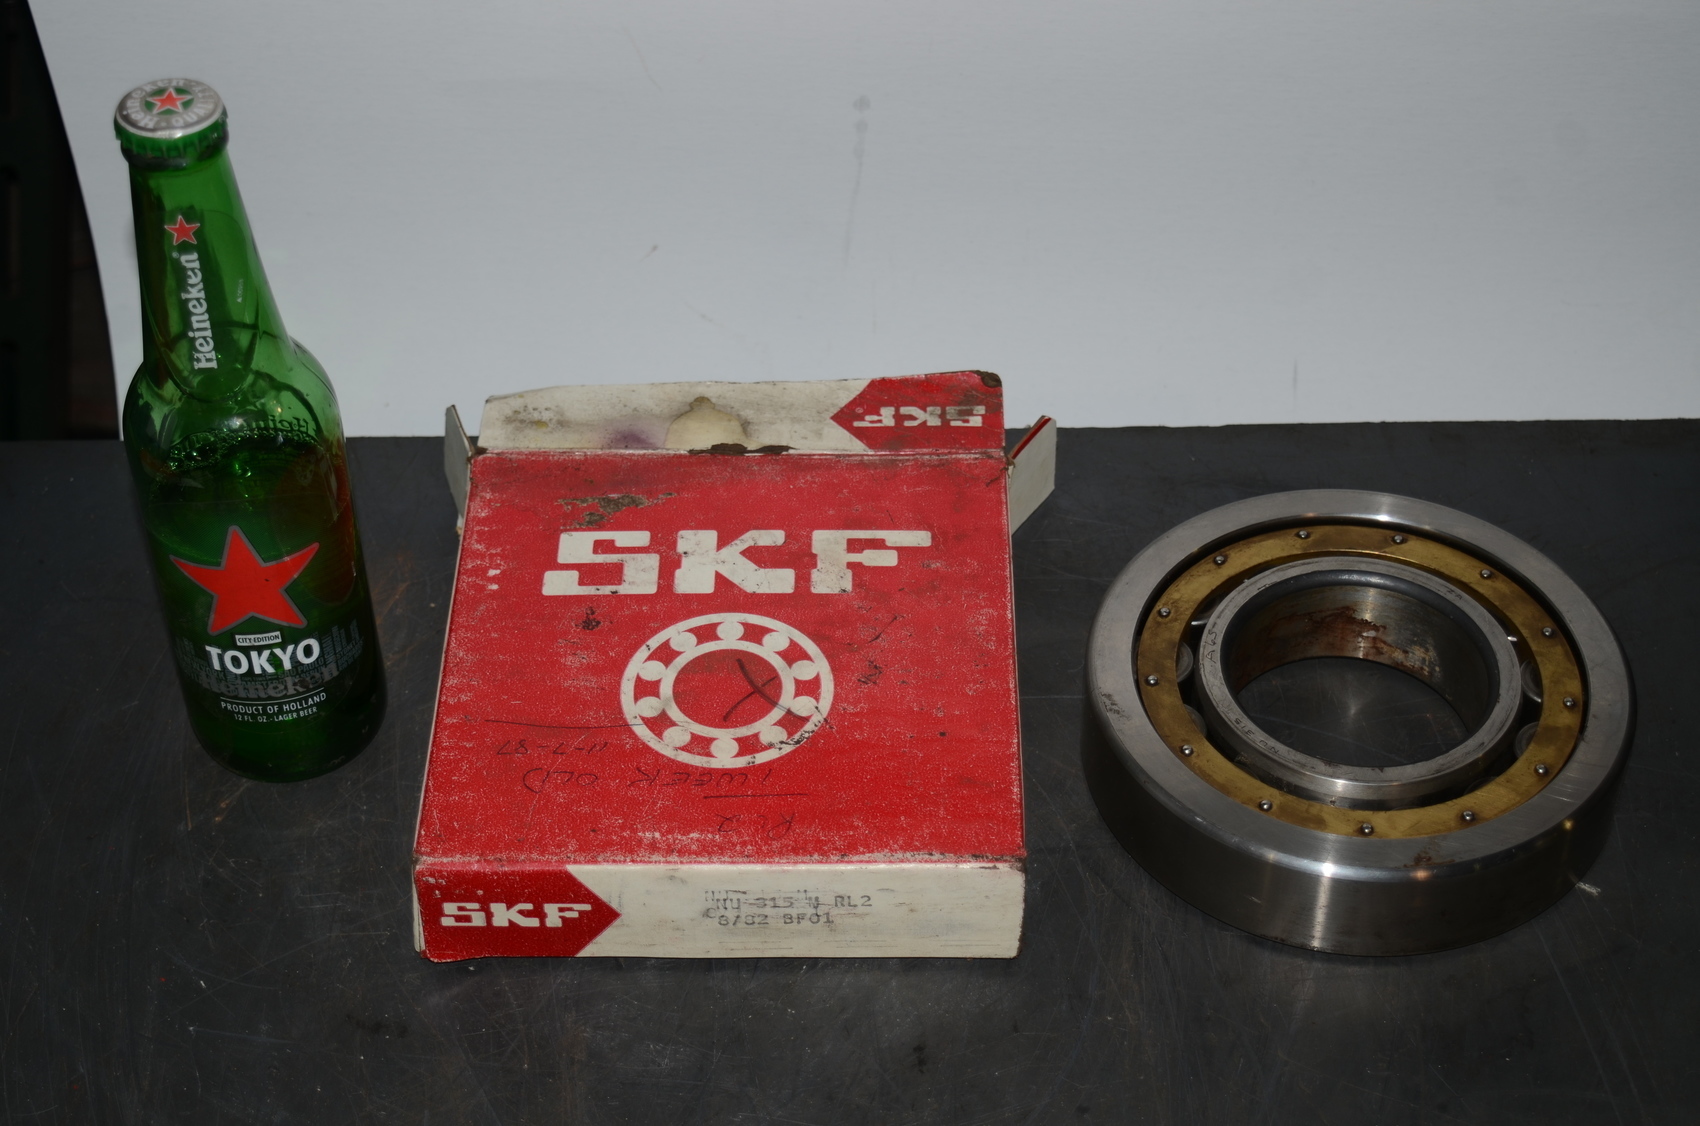 SKF NU-315-M/RL2 bearings